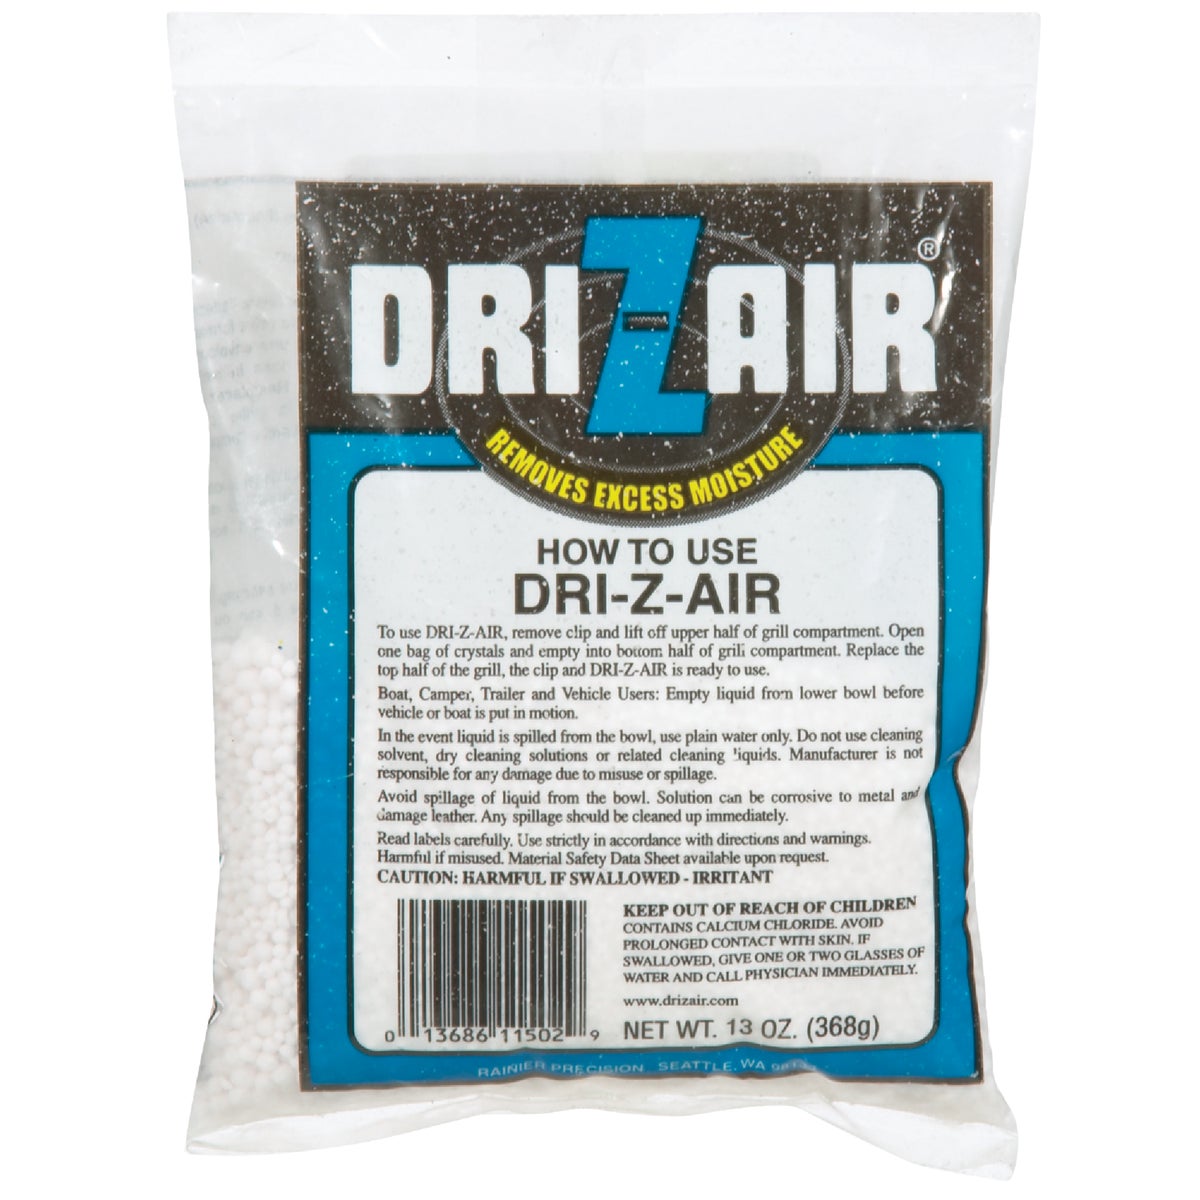 Dri-z-air Crystals - 502 by Rainier Precision